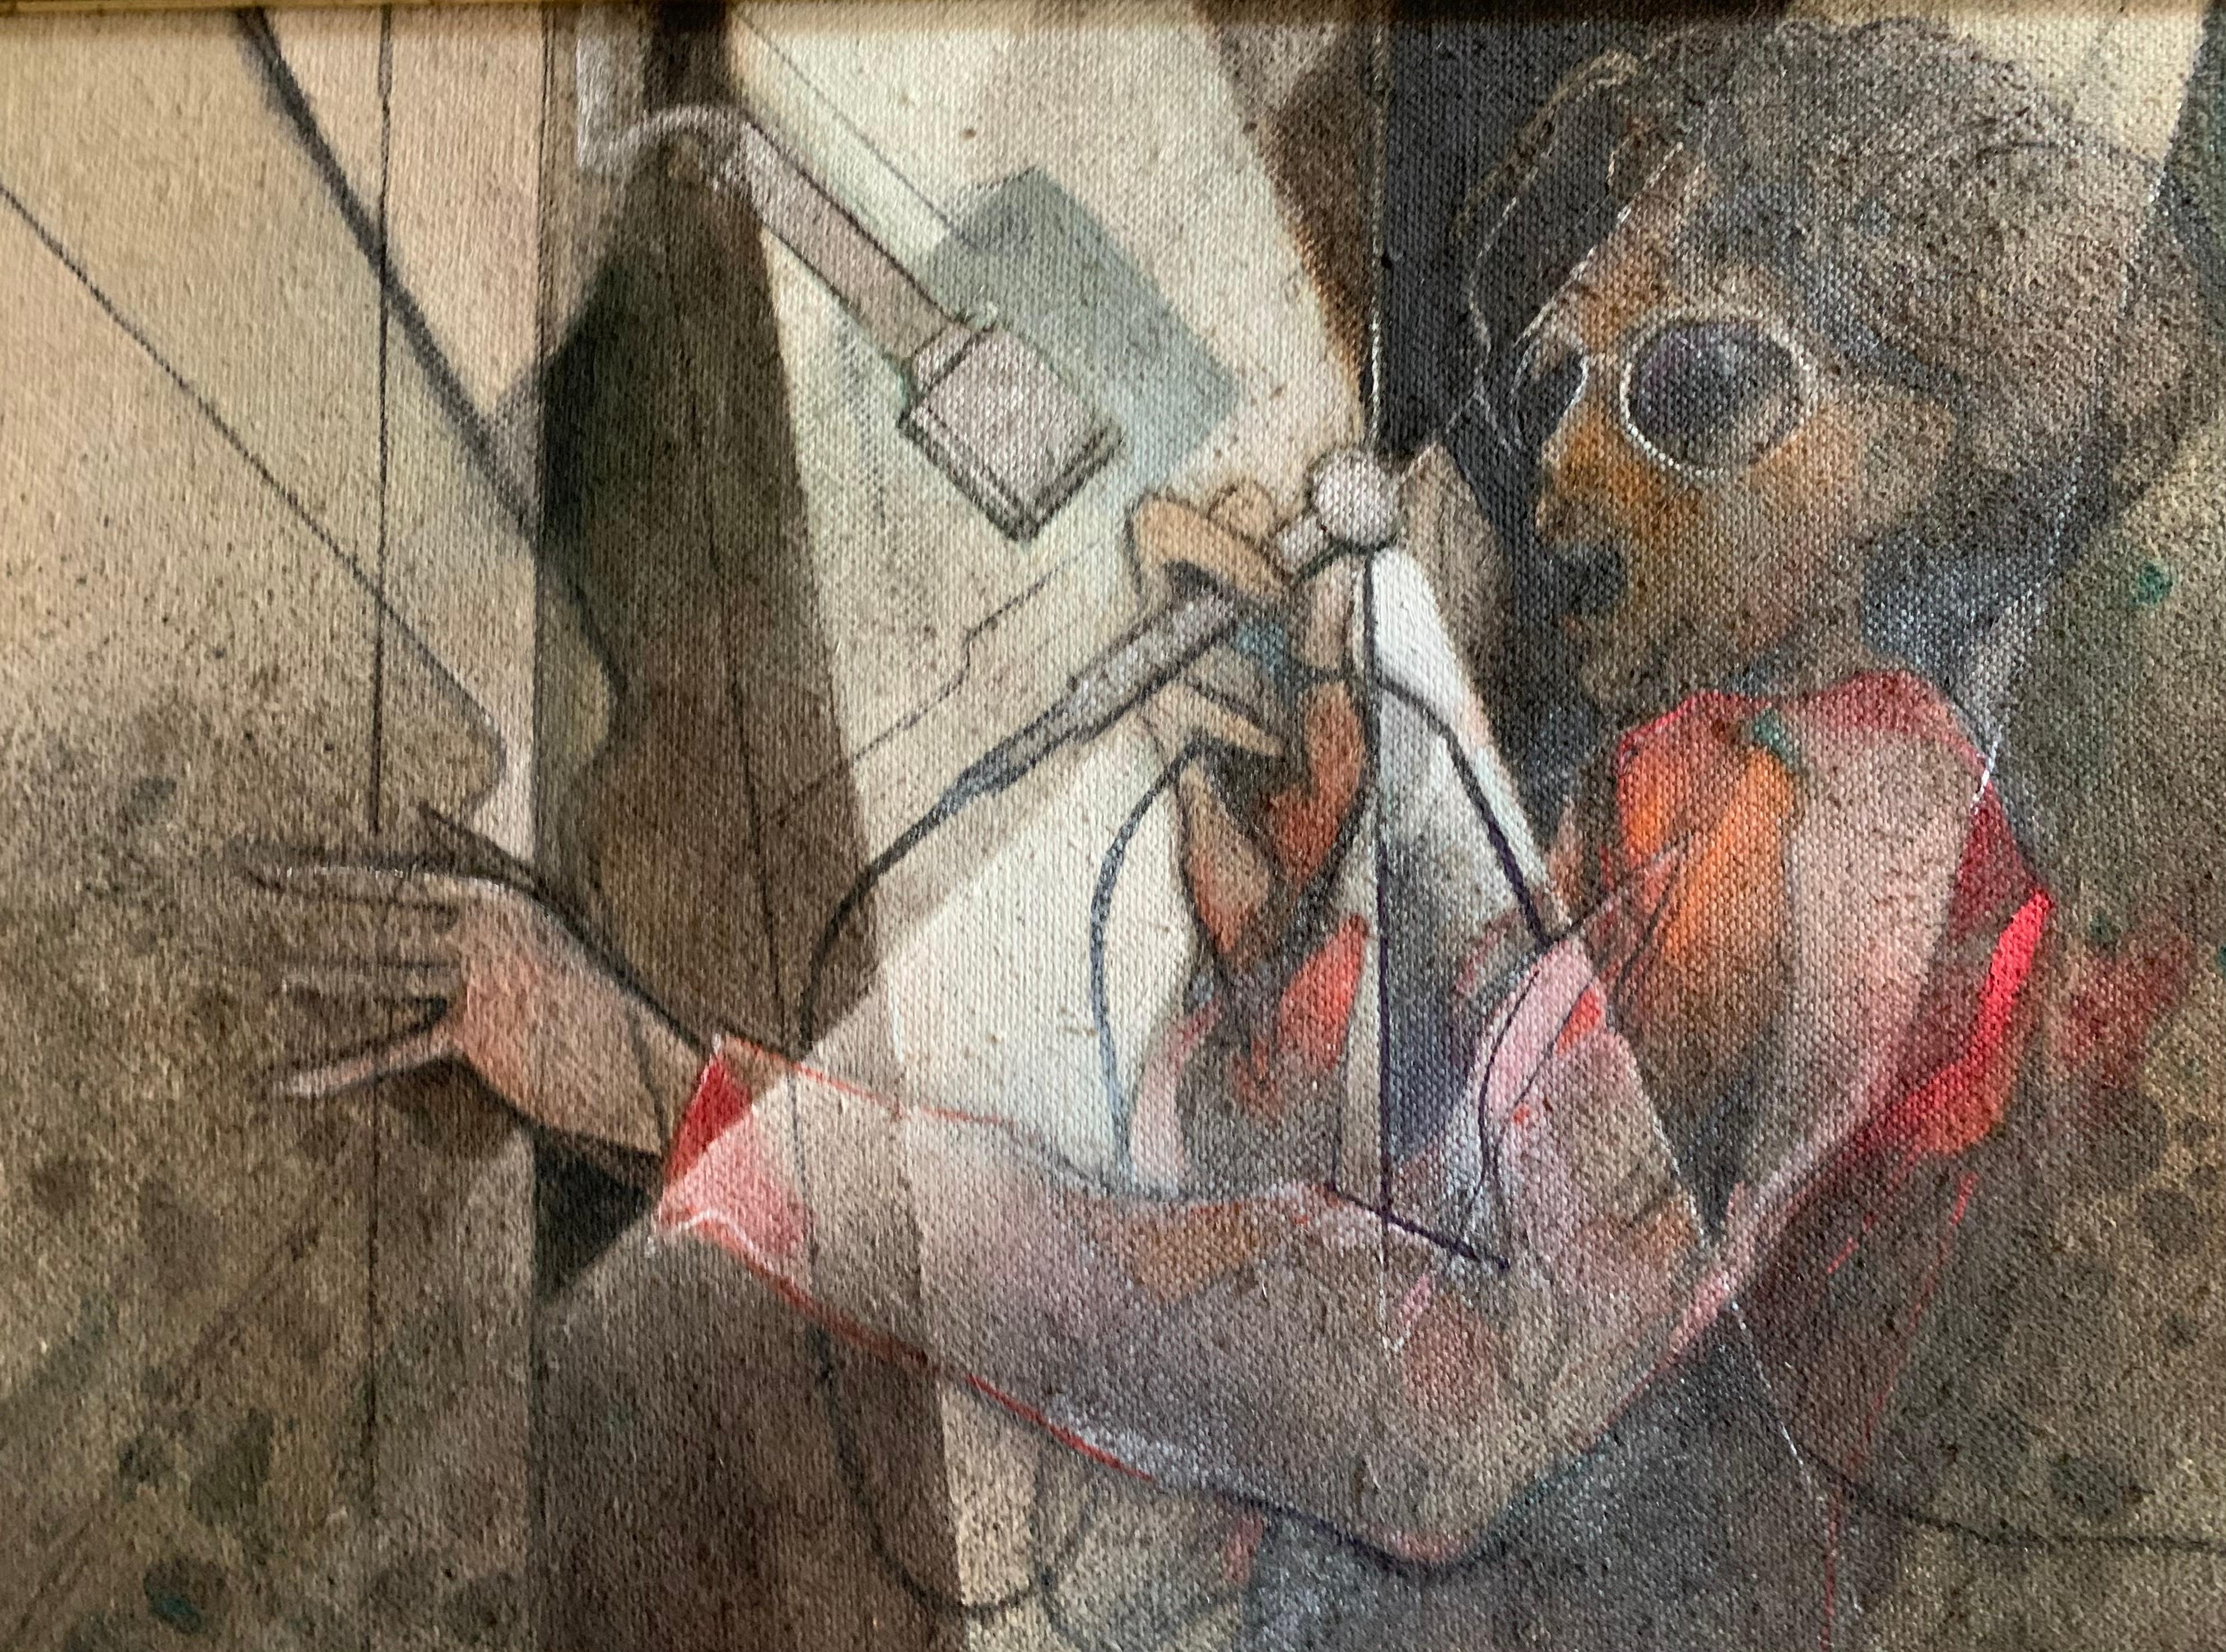 Chanteur pop.
Le tableau est l'œuvre d'un peintre vénitien, né en 1937. Technique : huile sur toile.
Signé en bas à droite et au dos de la toile : Andrea Pagnacco.
Il représente une chanteuse des années 1970 avec une coiffure volumineuse, des